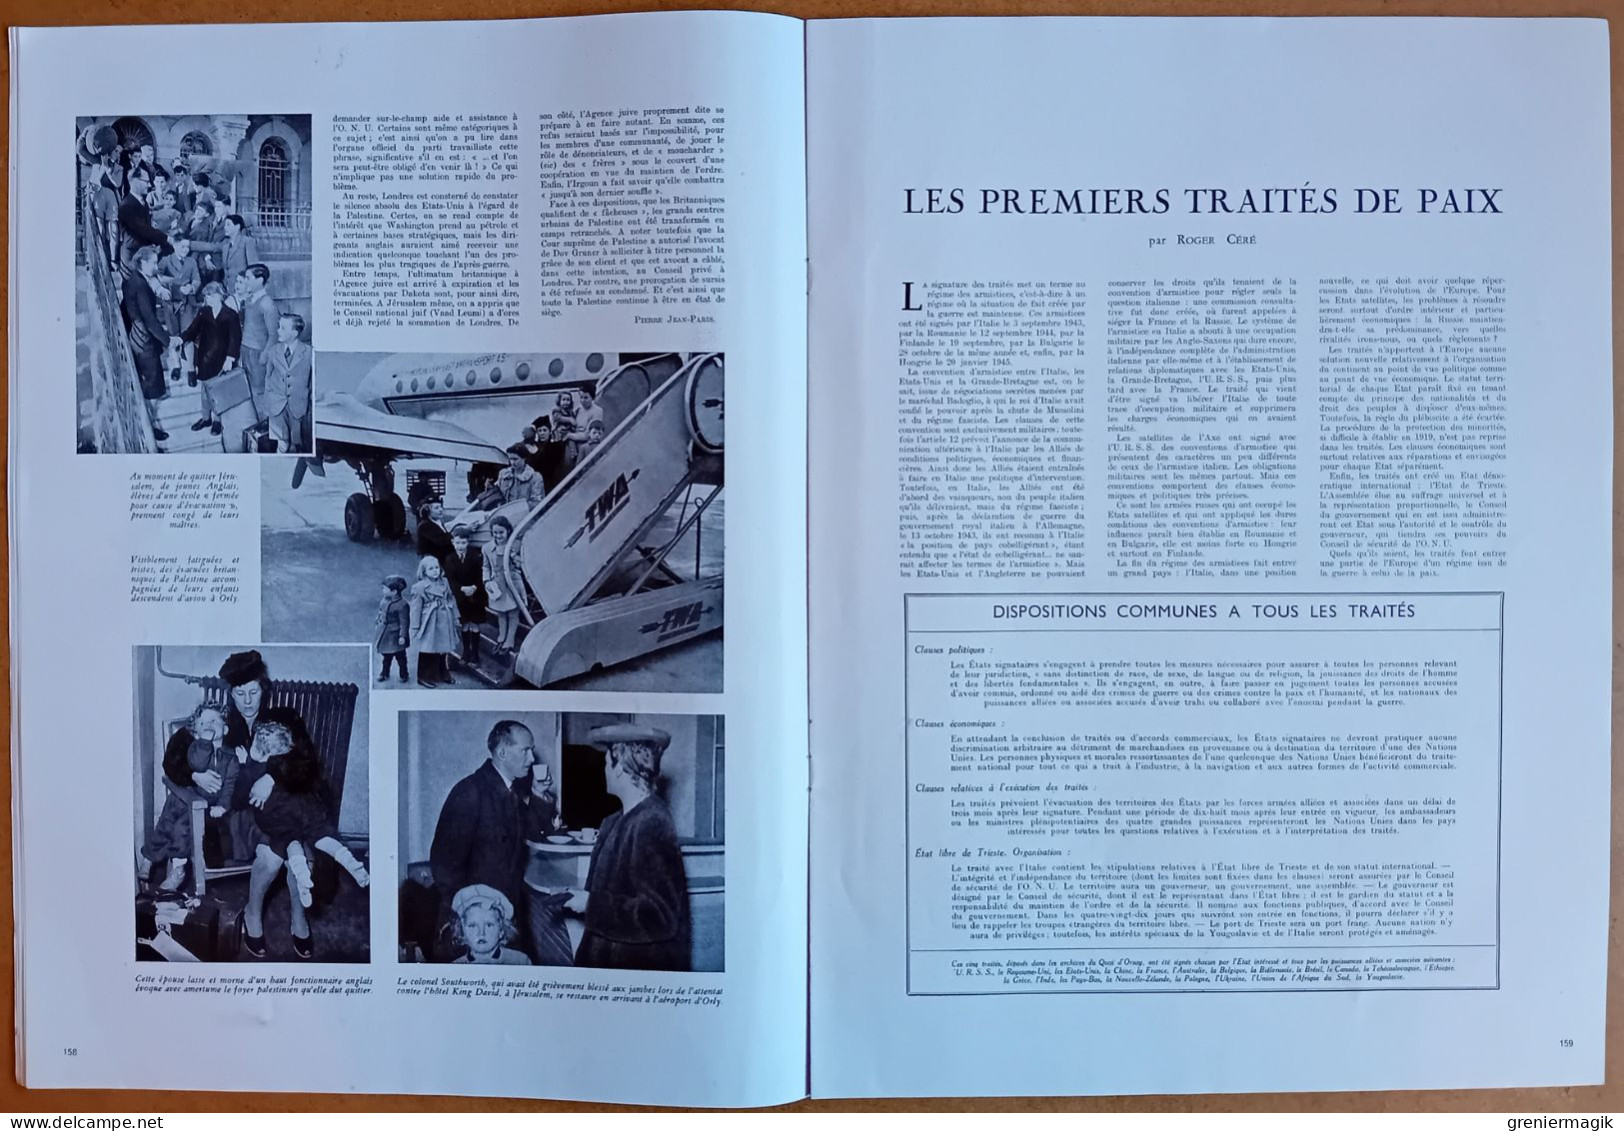 France Illustration N°72 15/02/1947 Ultimatum en Palestine/Indochine/Traités de paix/Royal Tour/Grassholm/Zuyderzee